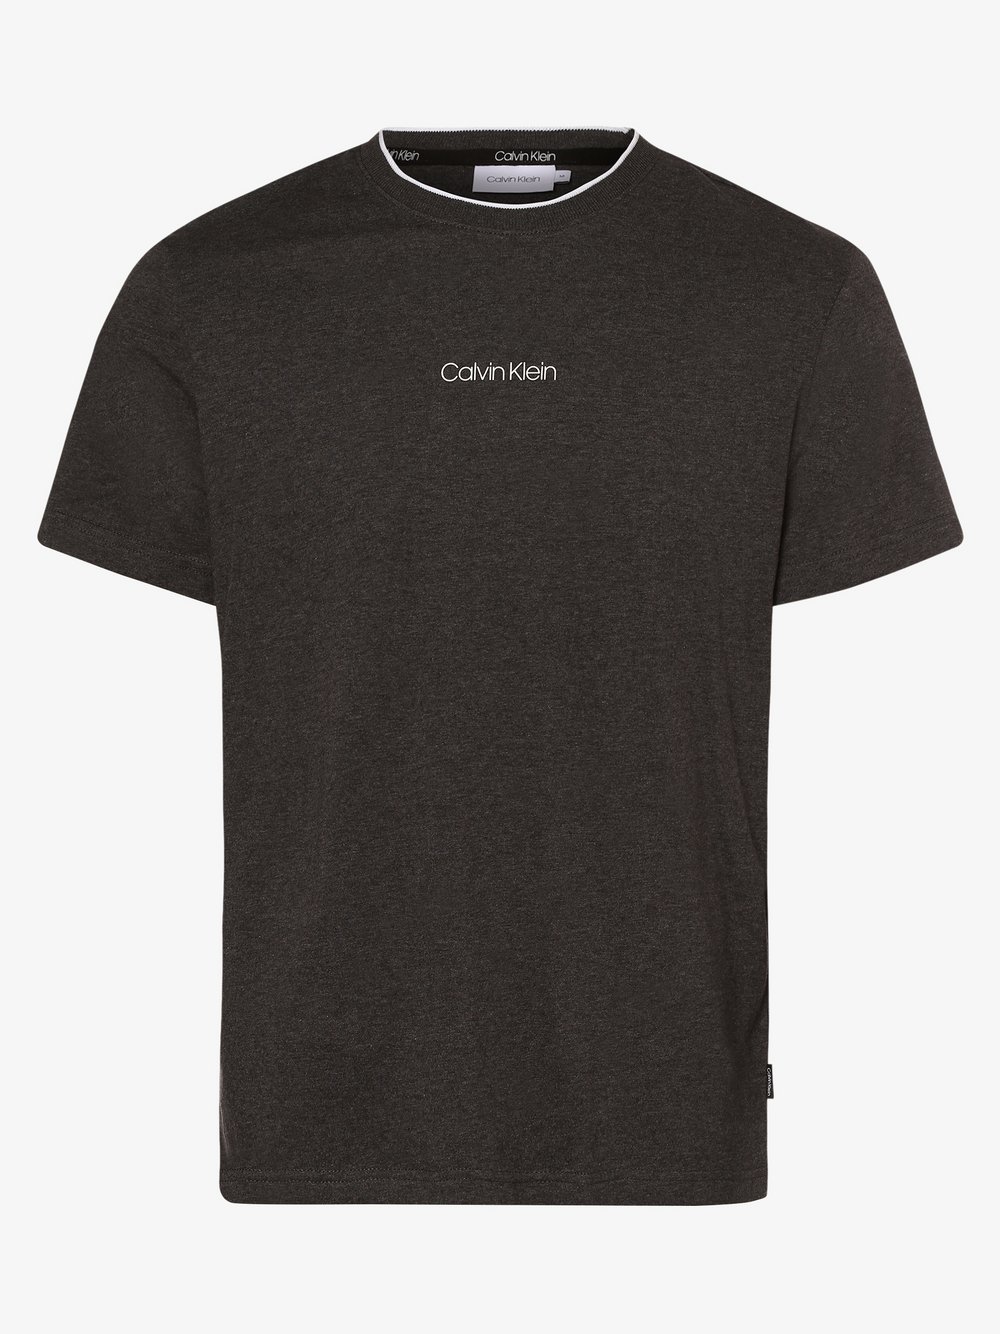 Calvin Klein - T-shirt męski, szary